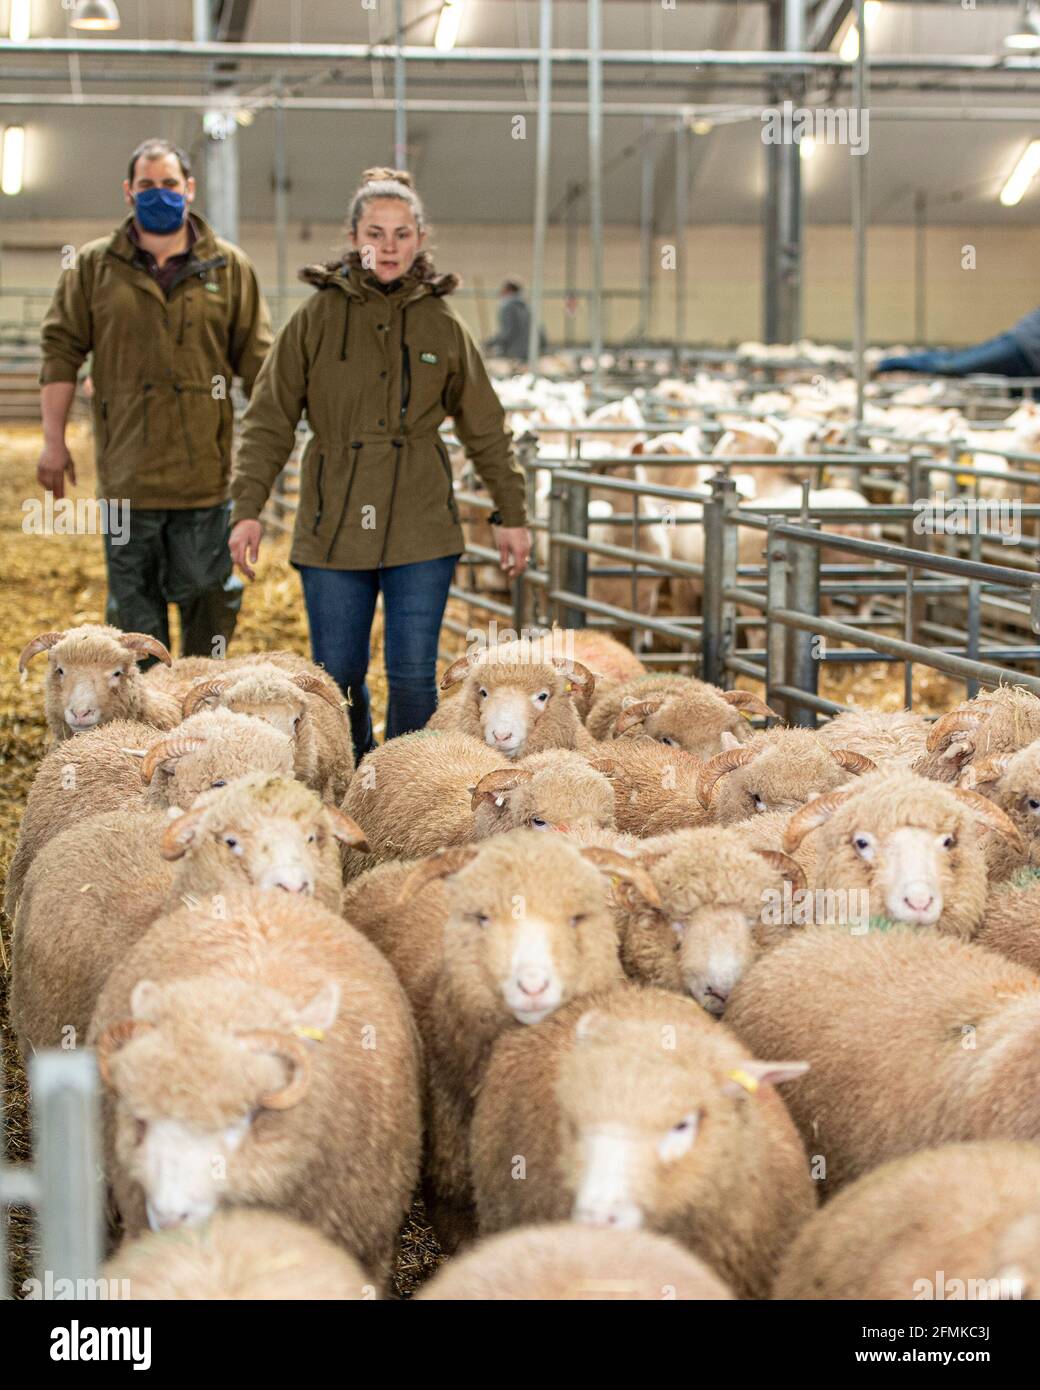 farmers droving sheep at market Stock Photo